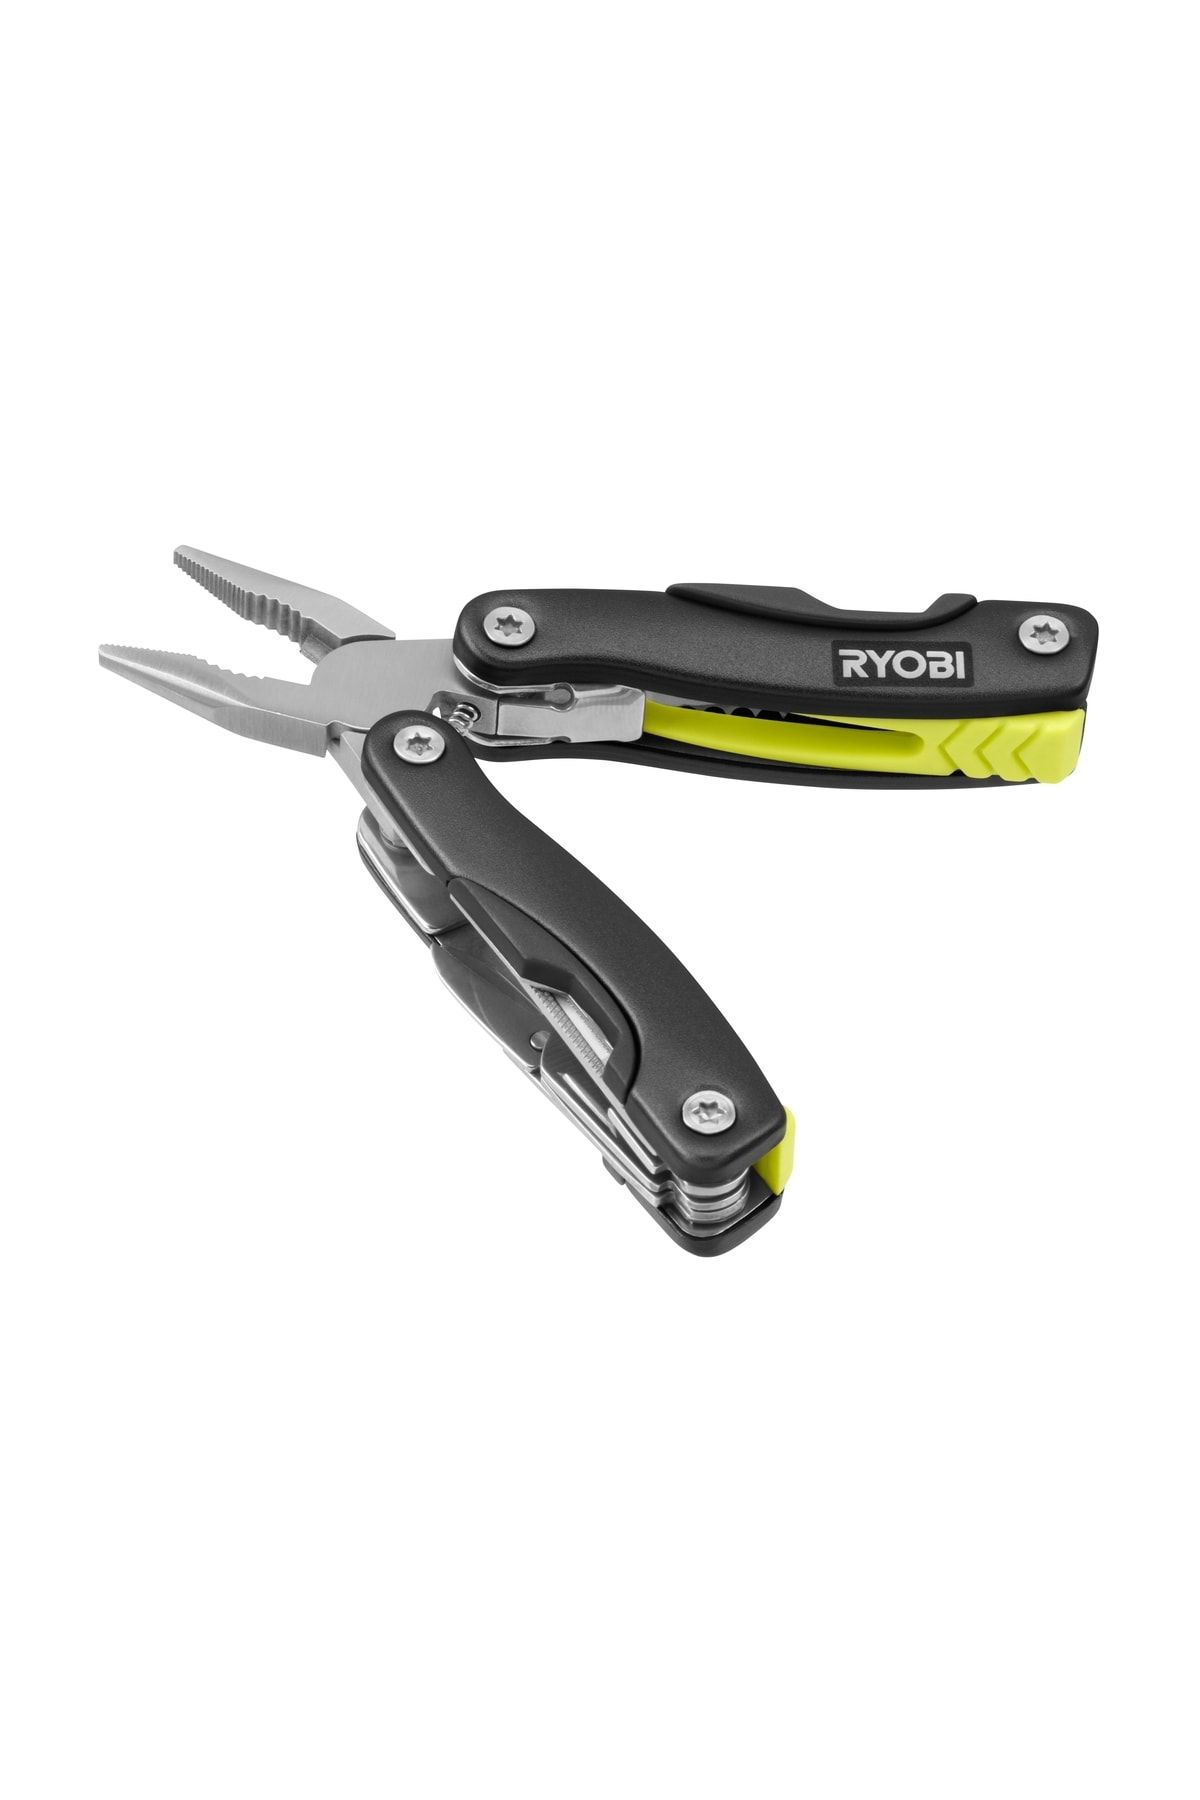 Ryobi 14-ın-1 Compact Multi-tool Rmt14